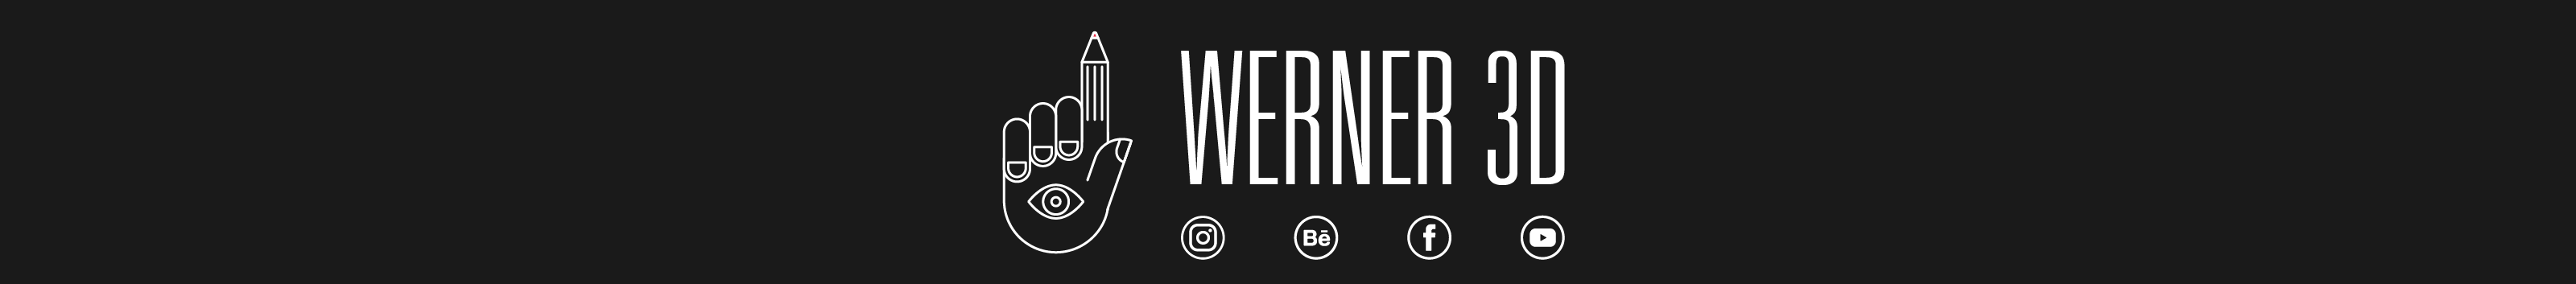 Werner 3D's profile banner